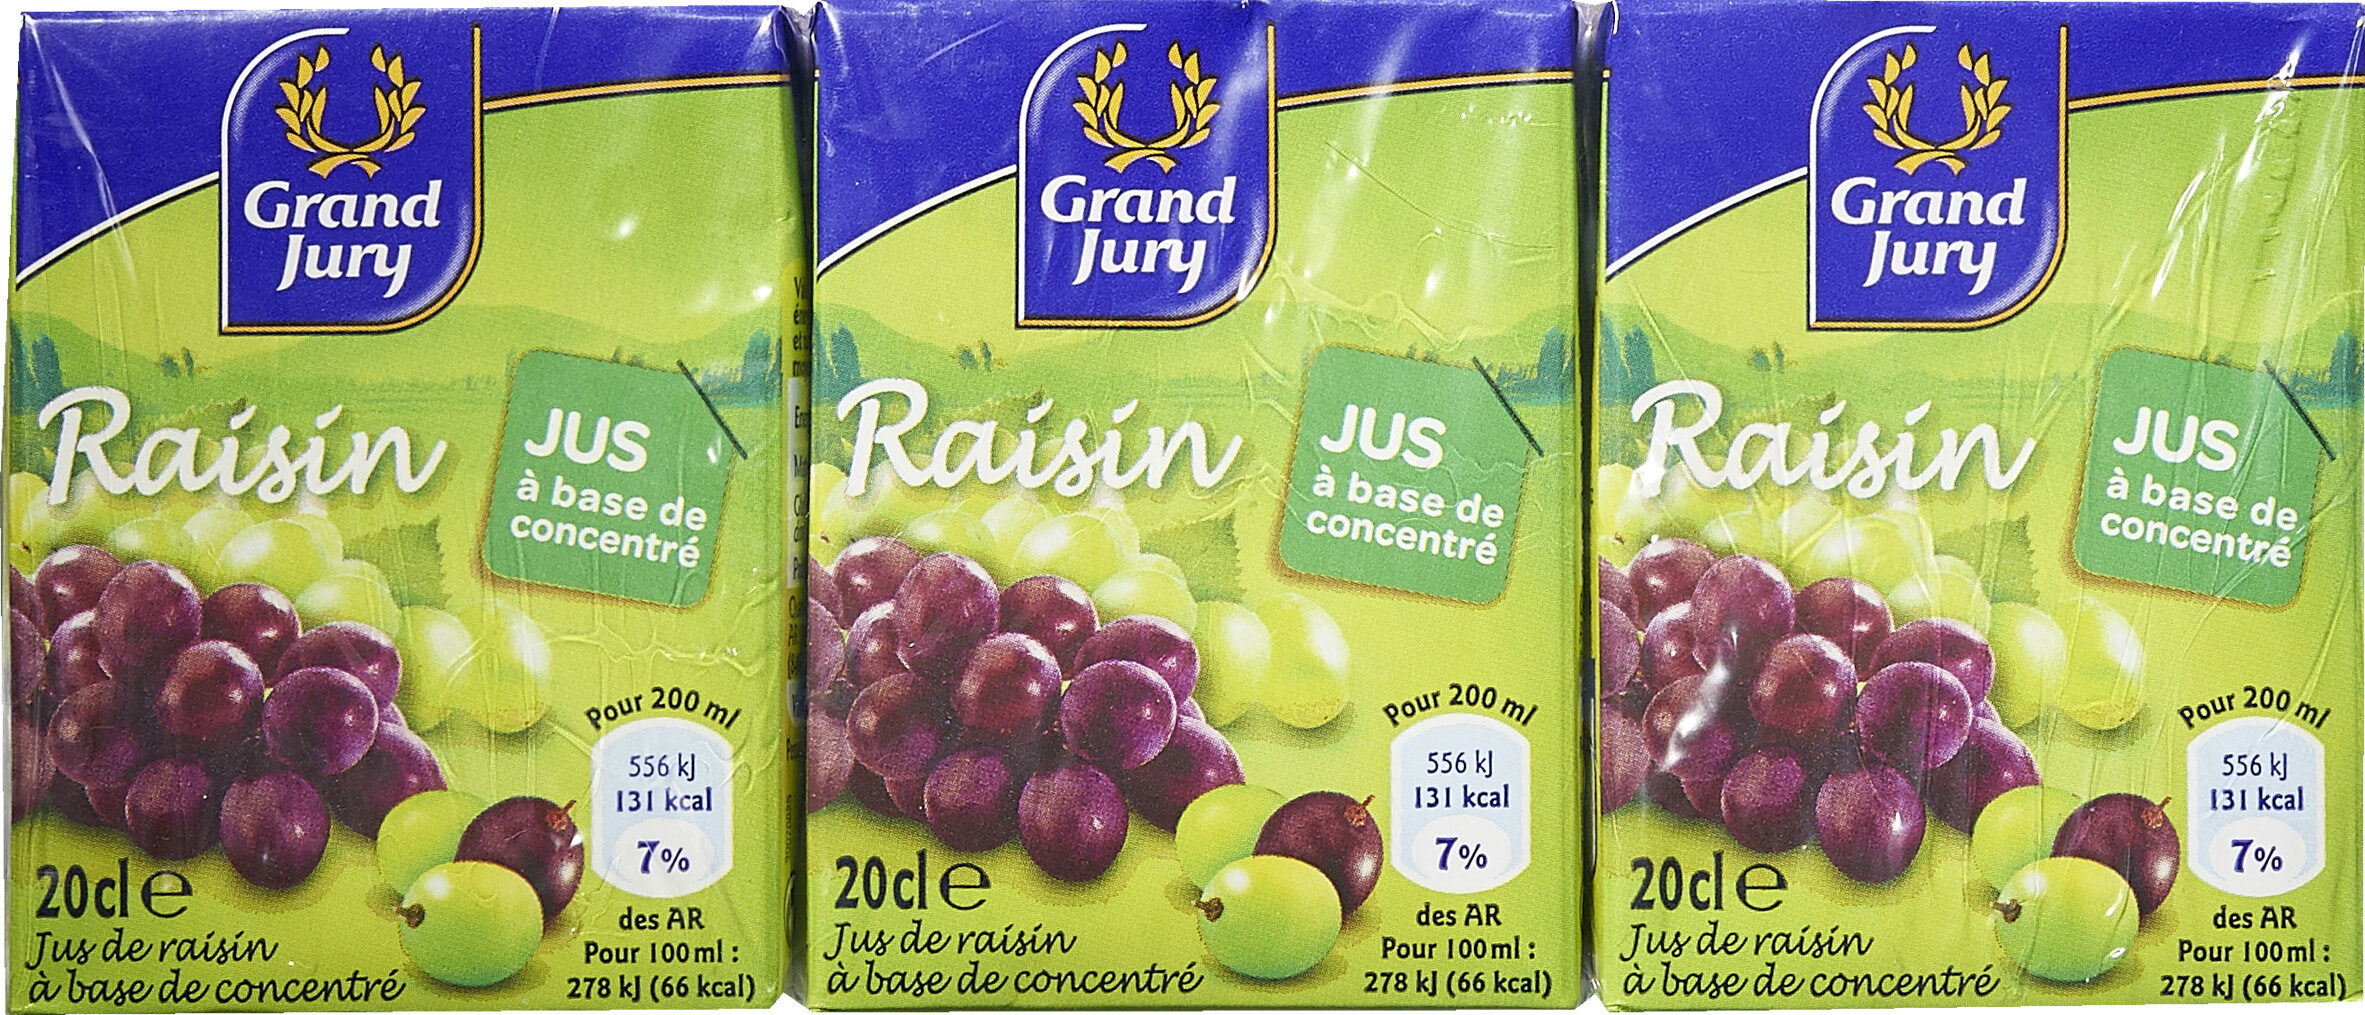 petits jus de raisin - Product - fr